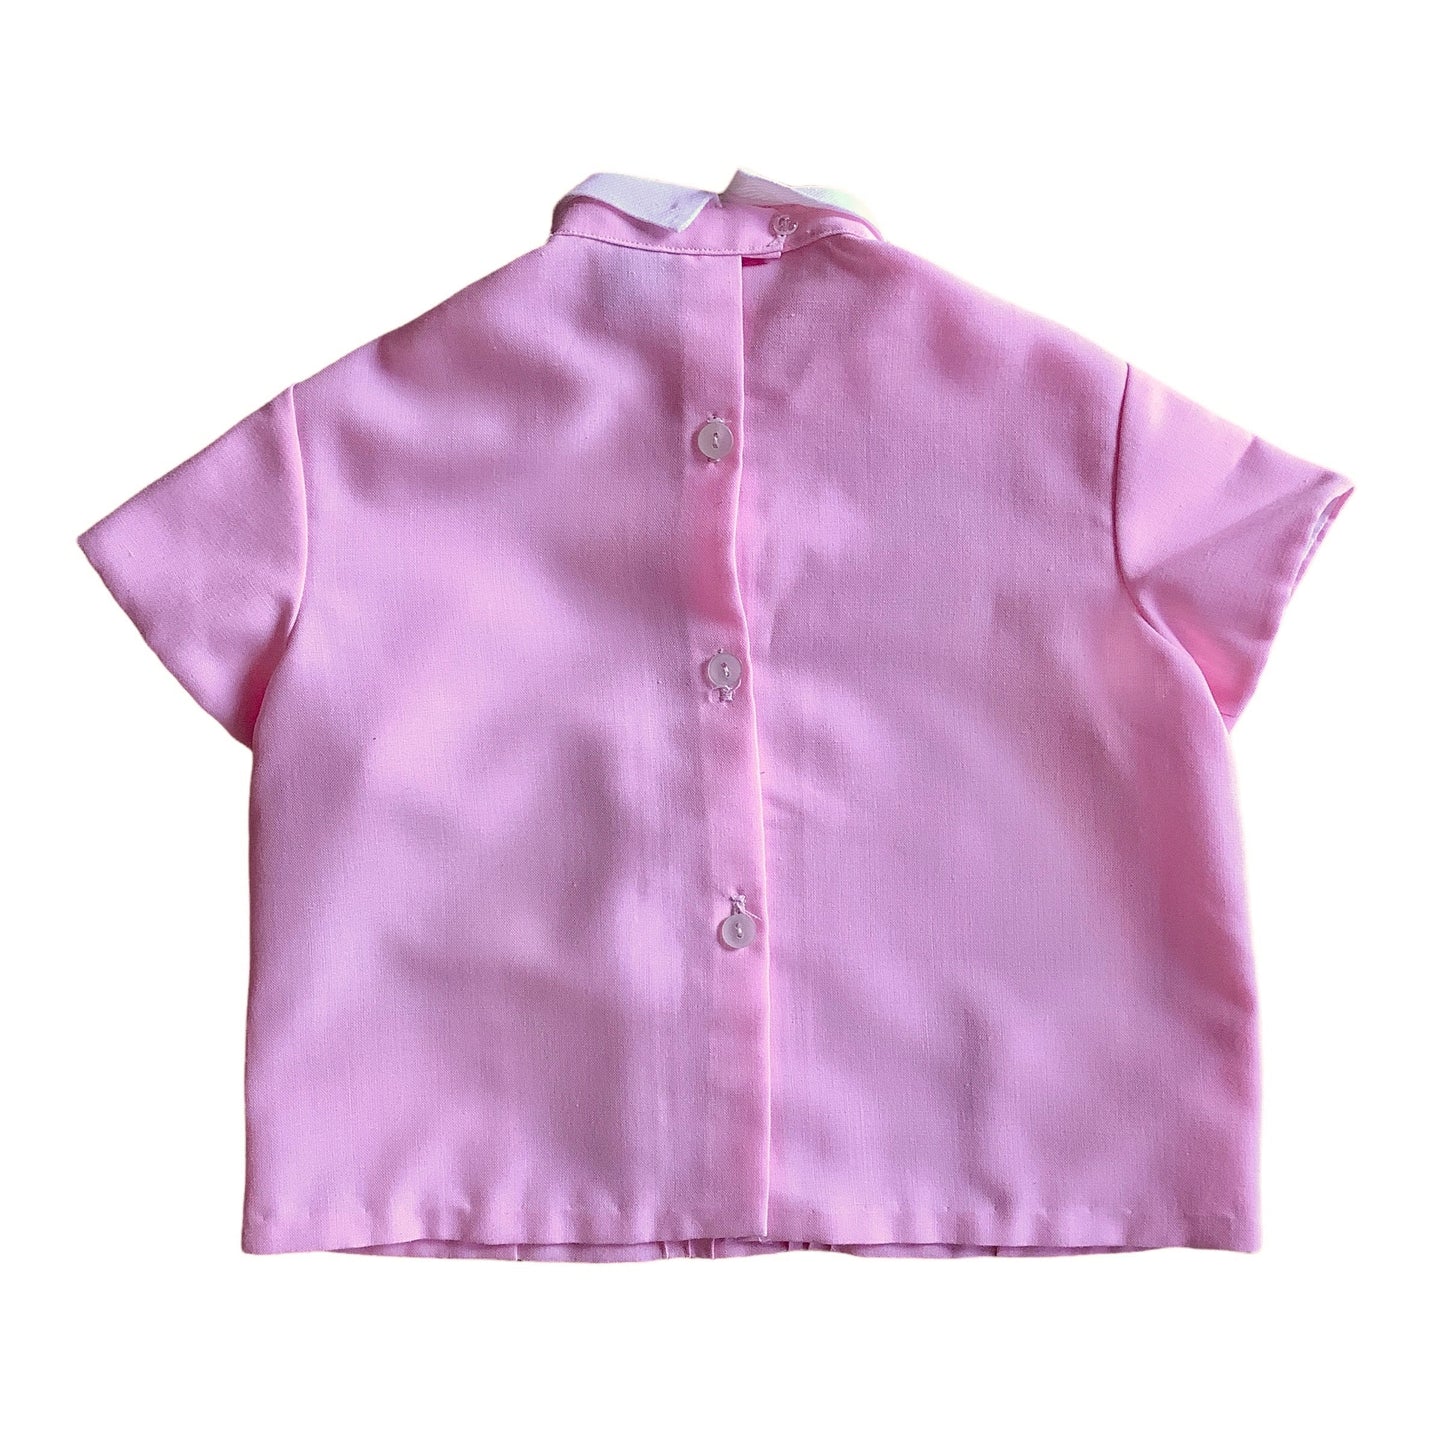 Vintage 60's Mod Pink Dress 12-18M